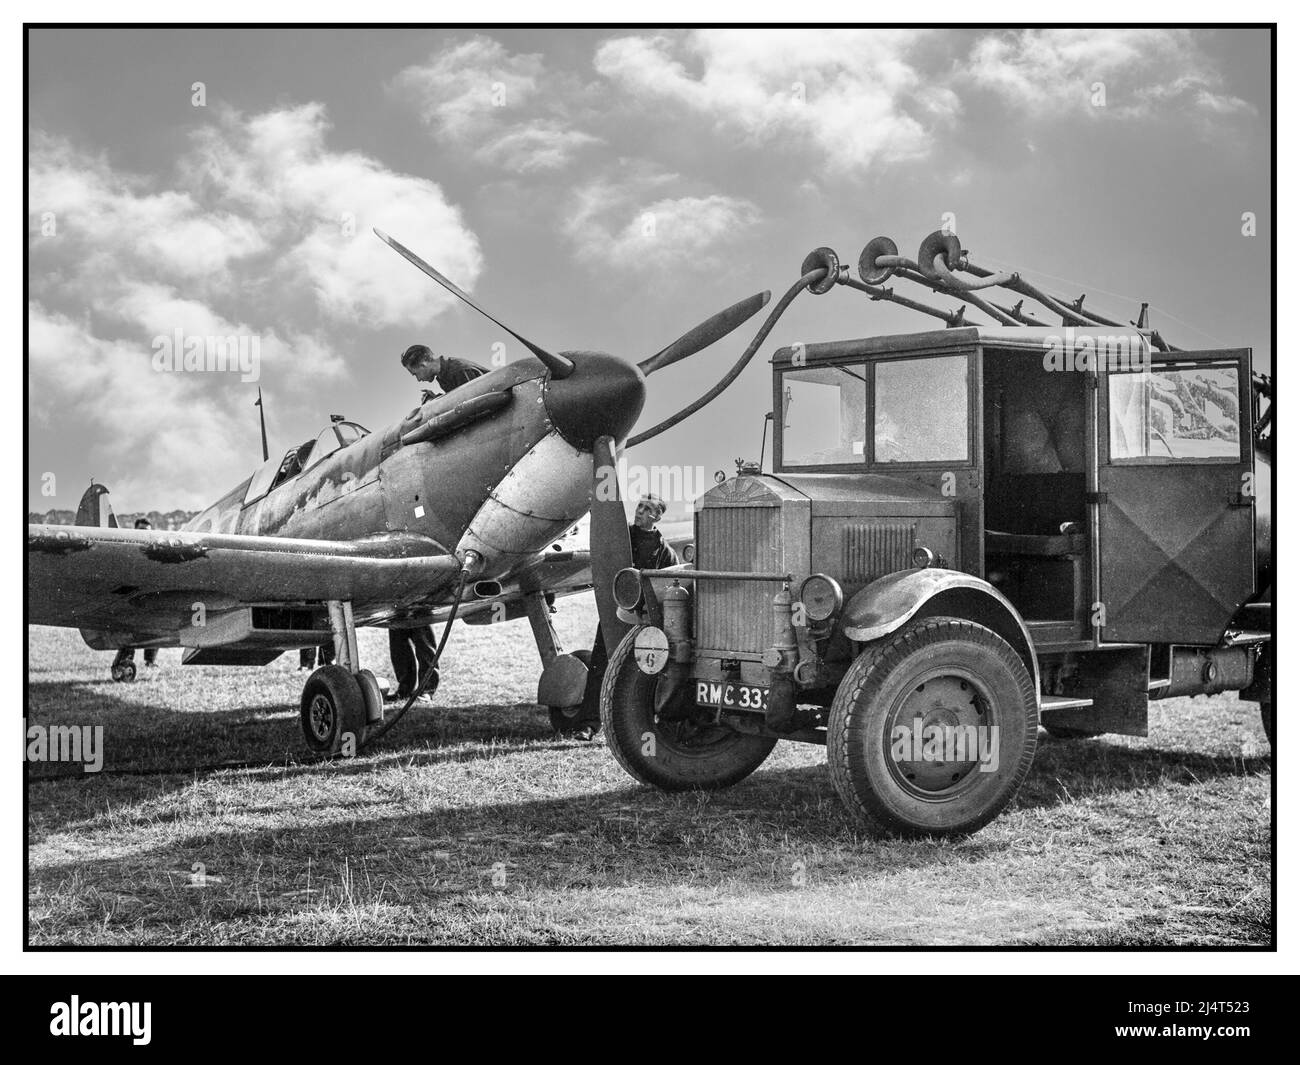 SPITFIRE WW2 bataille d'Angleterre Un Spitfire de l'escadron no 19 est ravitaillé à Fowlmere, près de Duxford, en septembre 1940. Ravitaillement d'un Spitfire de l'escadron n° 19 à Fowlmere pendant la bataille d'Angleterre, septembre 1940. Banque D'Images